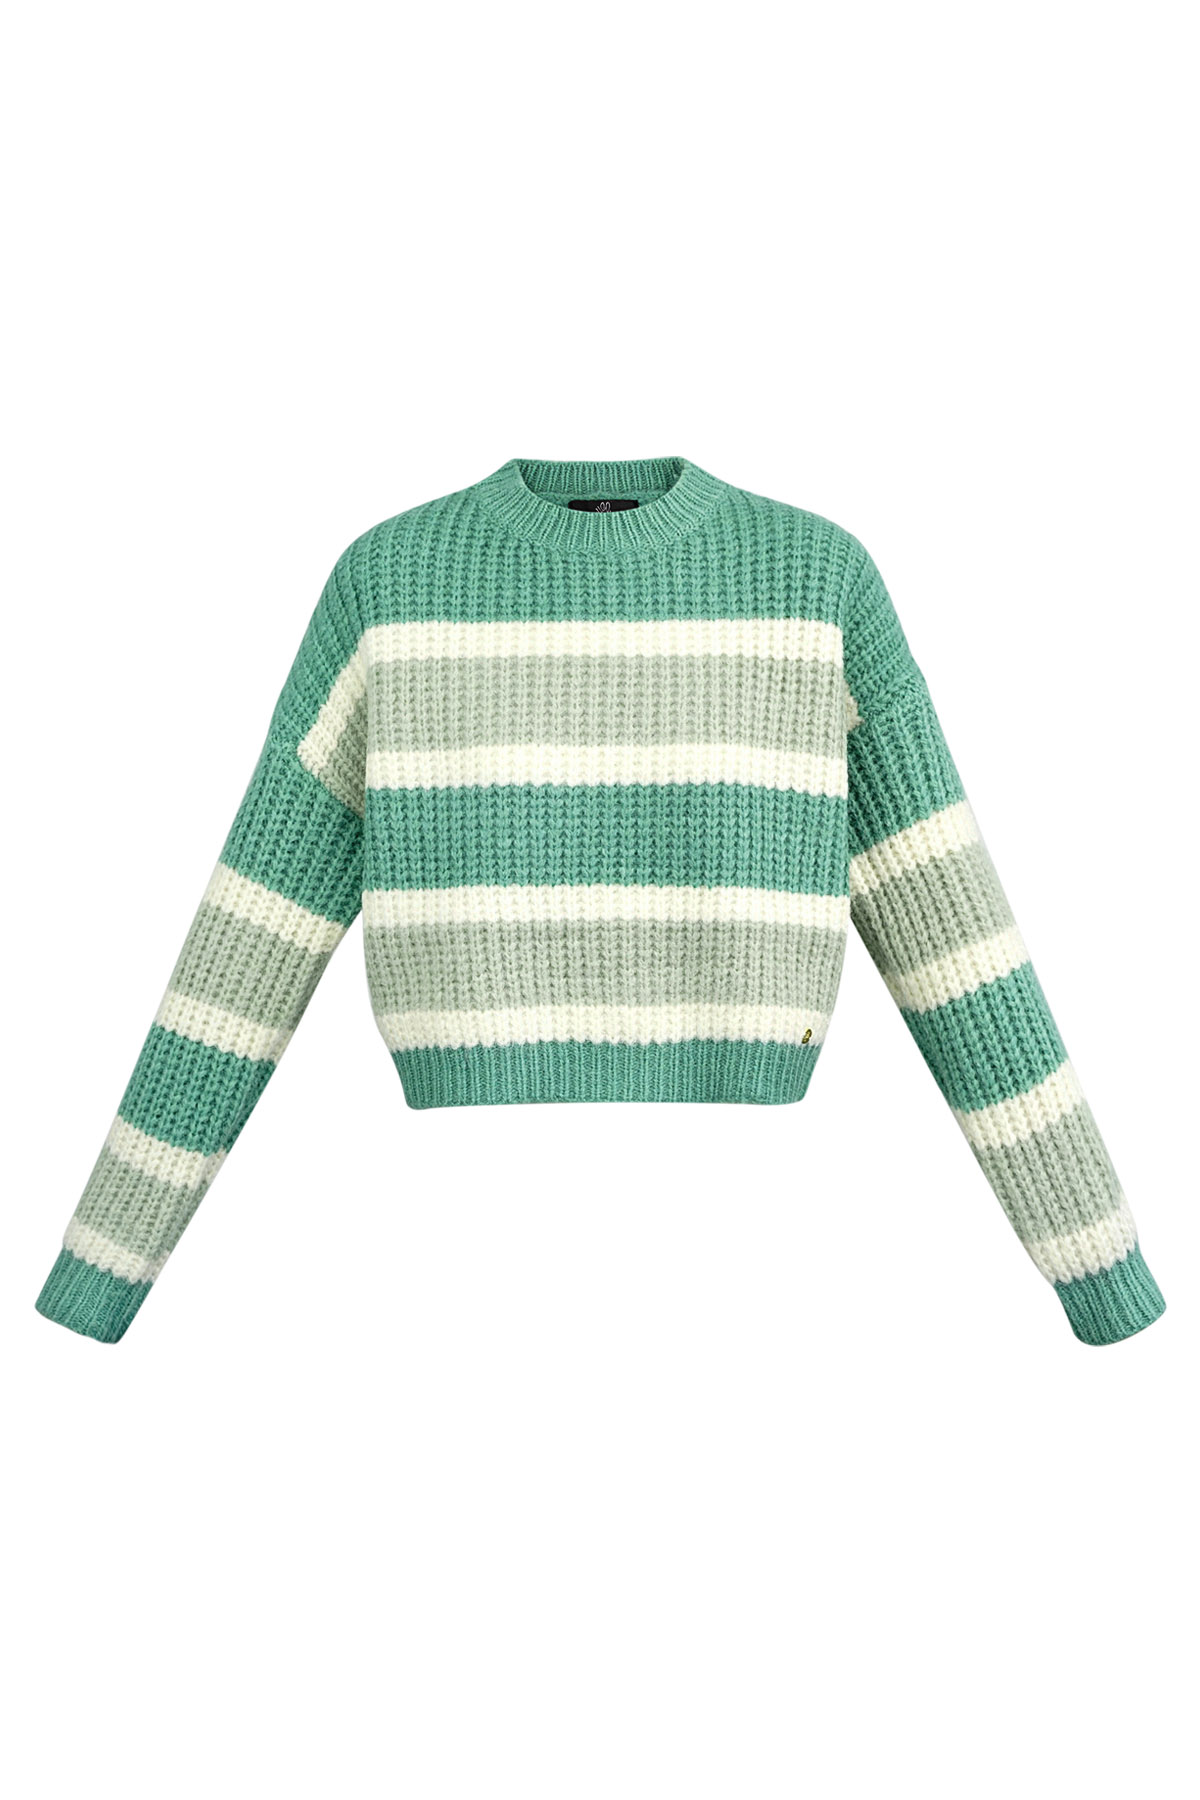 Gestrickter dreifarbiger Pullover mit Streifen – grün